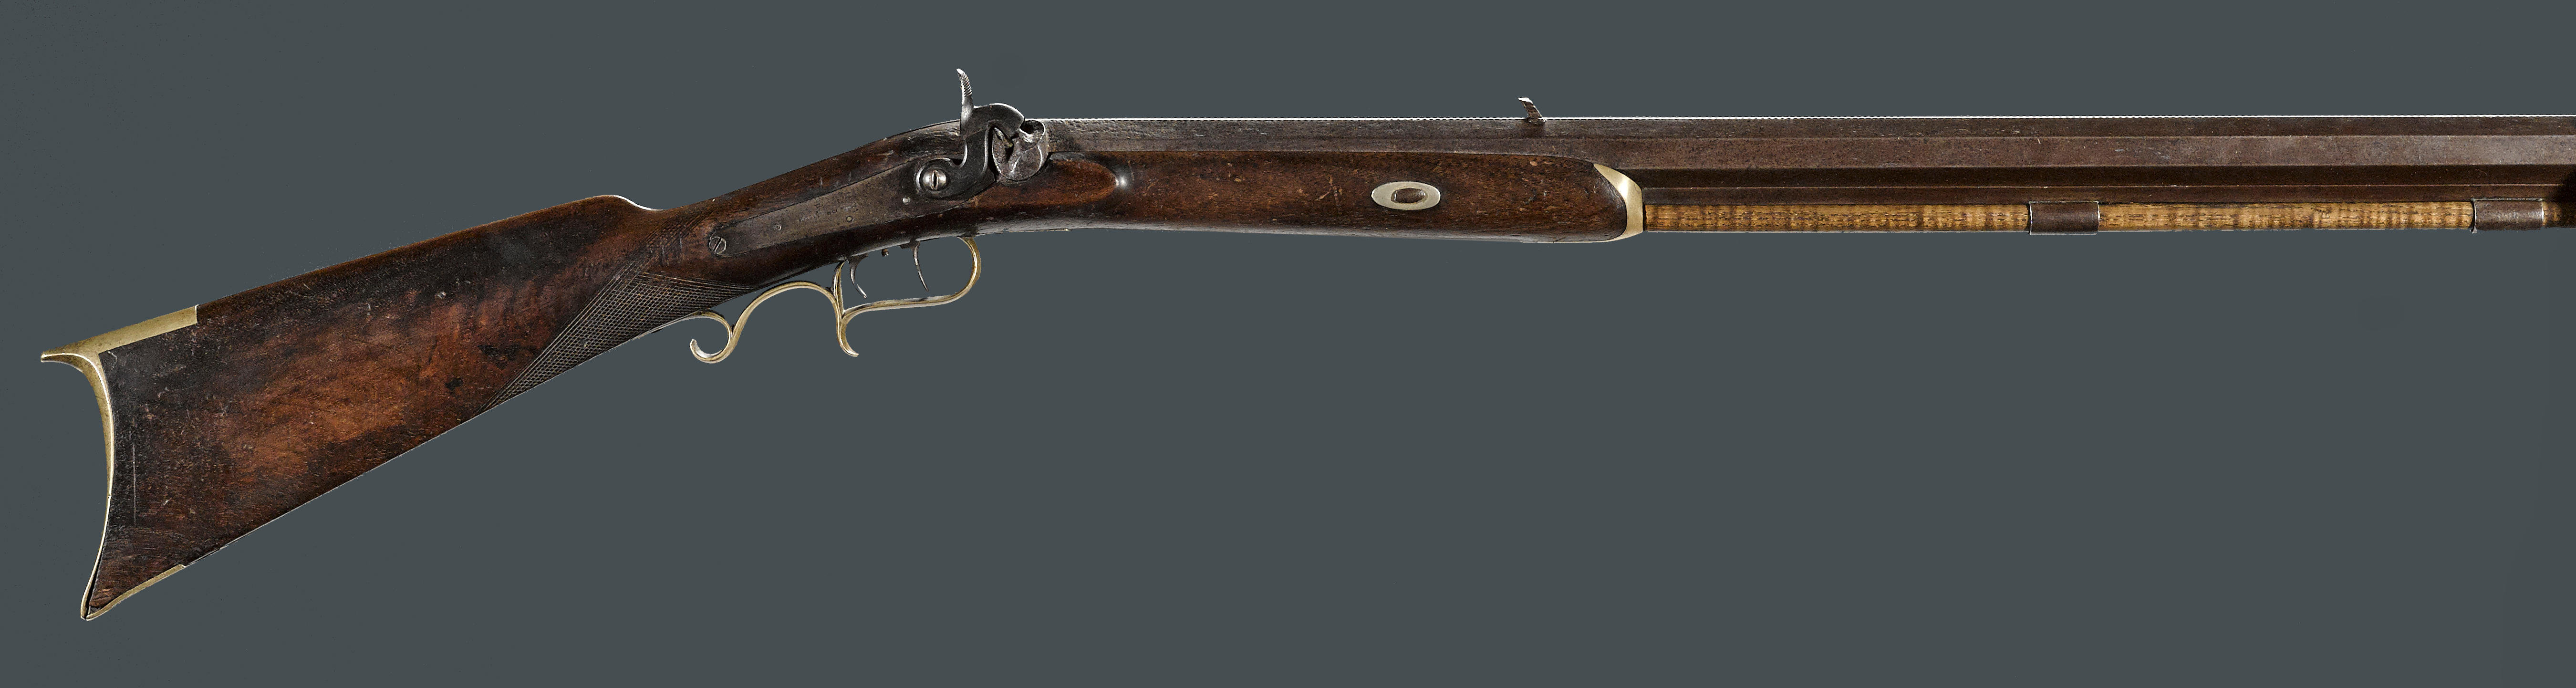 Antique W. KETLAND & Co. BRASS BARREL .58 Cal. Large Bore FLINTLOCK Pistol  Turn of the Century Flintlock Sidearm